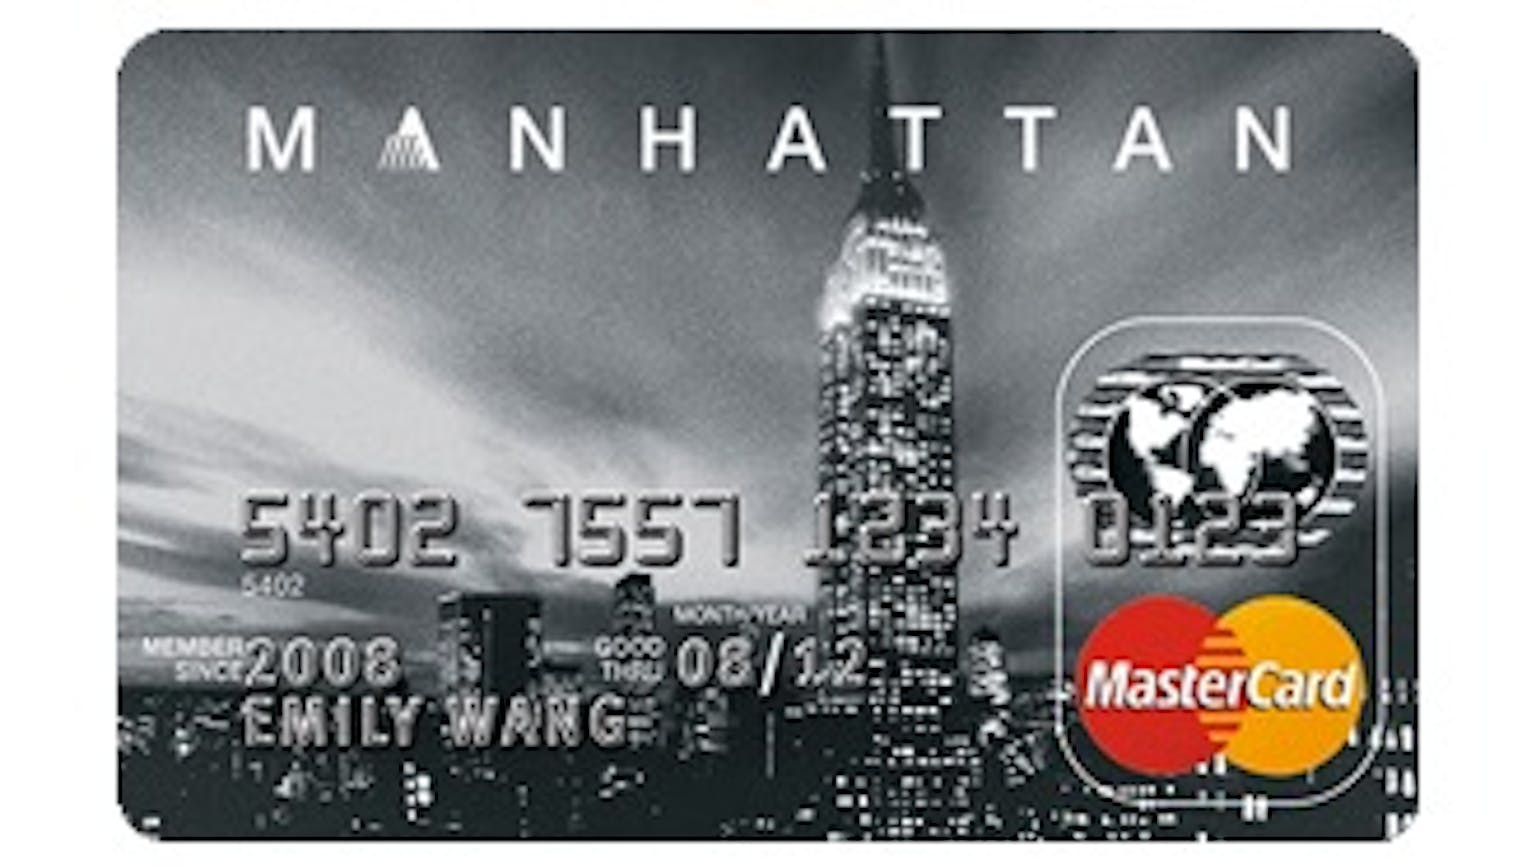 Standard Chartered MANHATTAN $500 Card